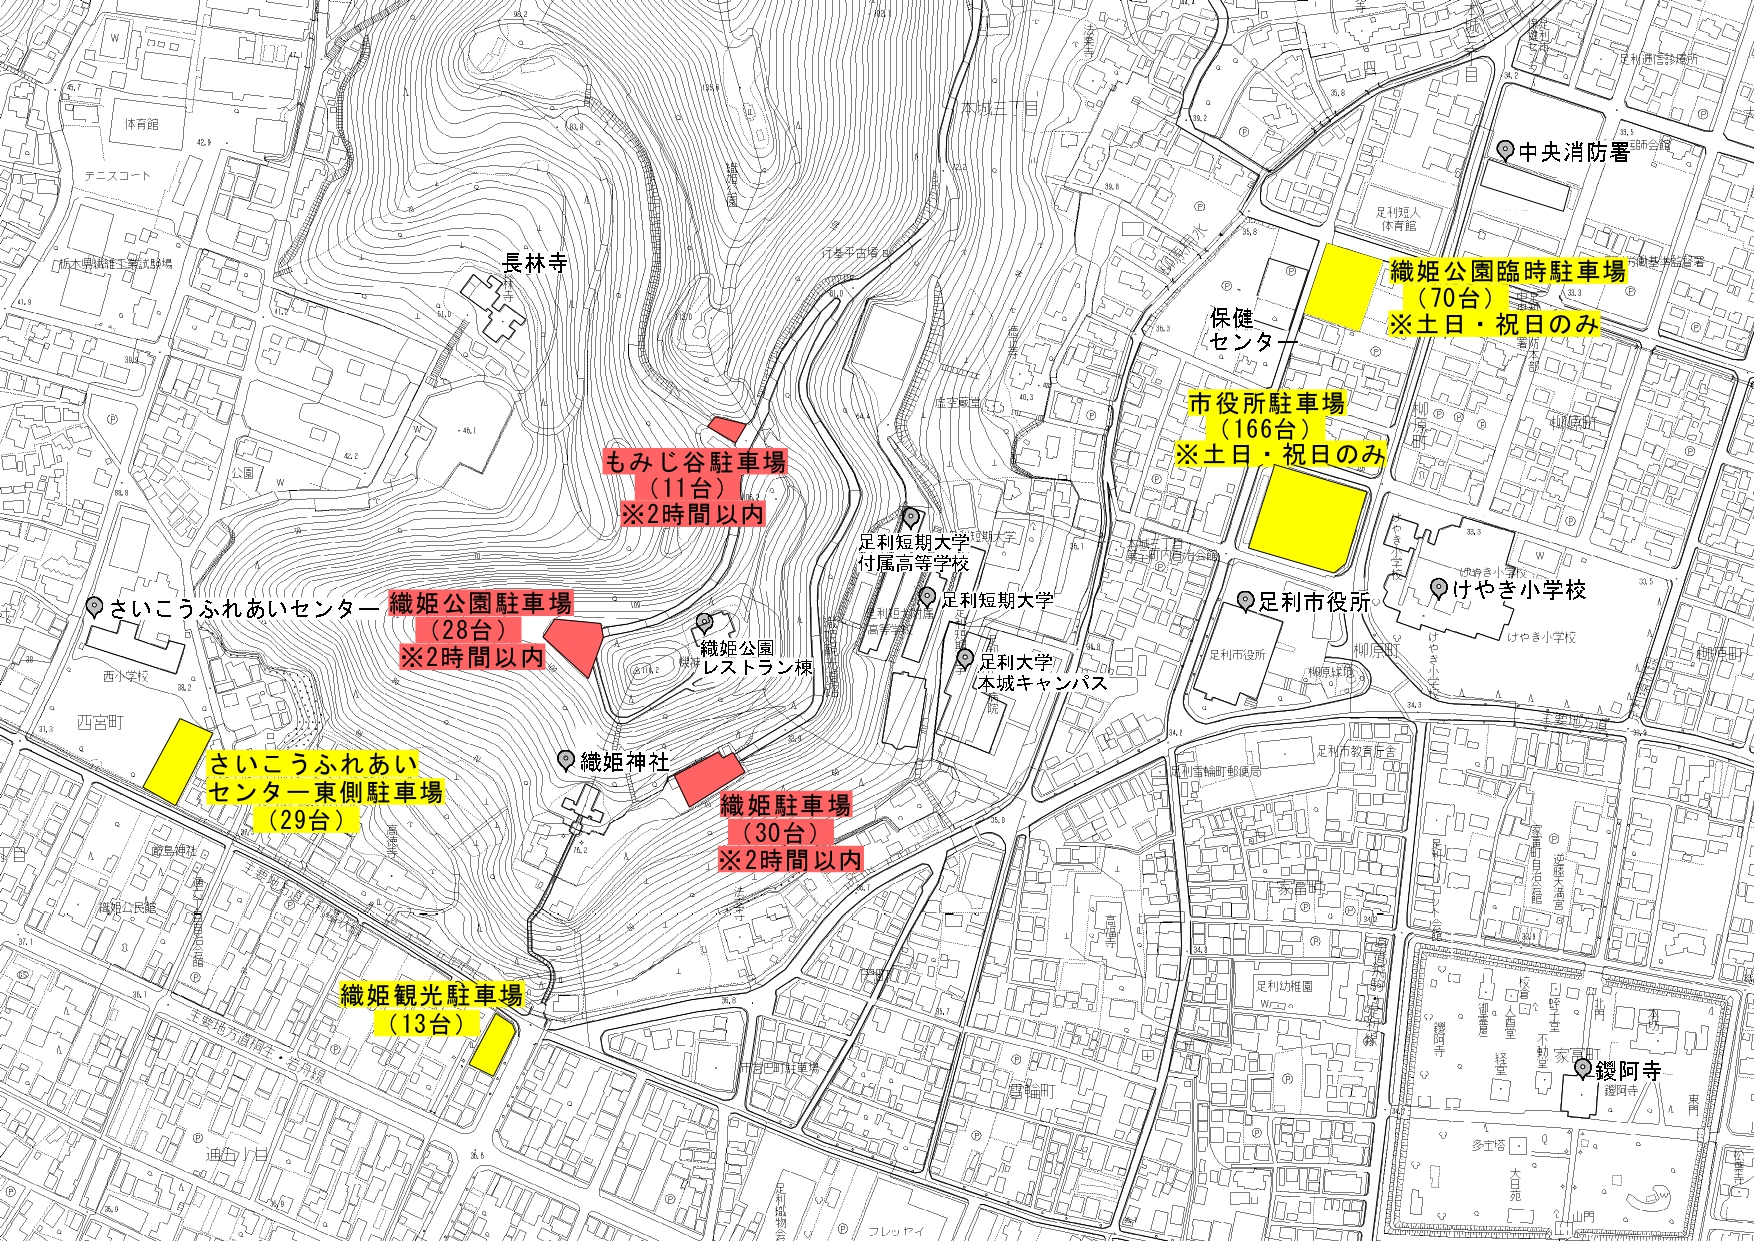 織姫公園周辺観光駐車場位置図_page-0001